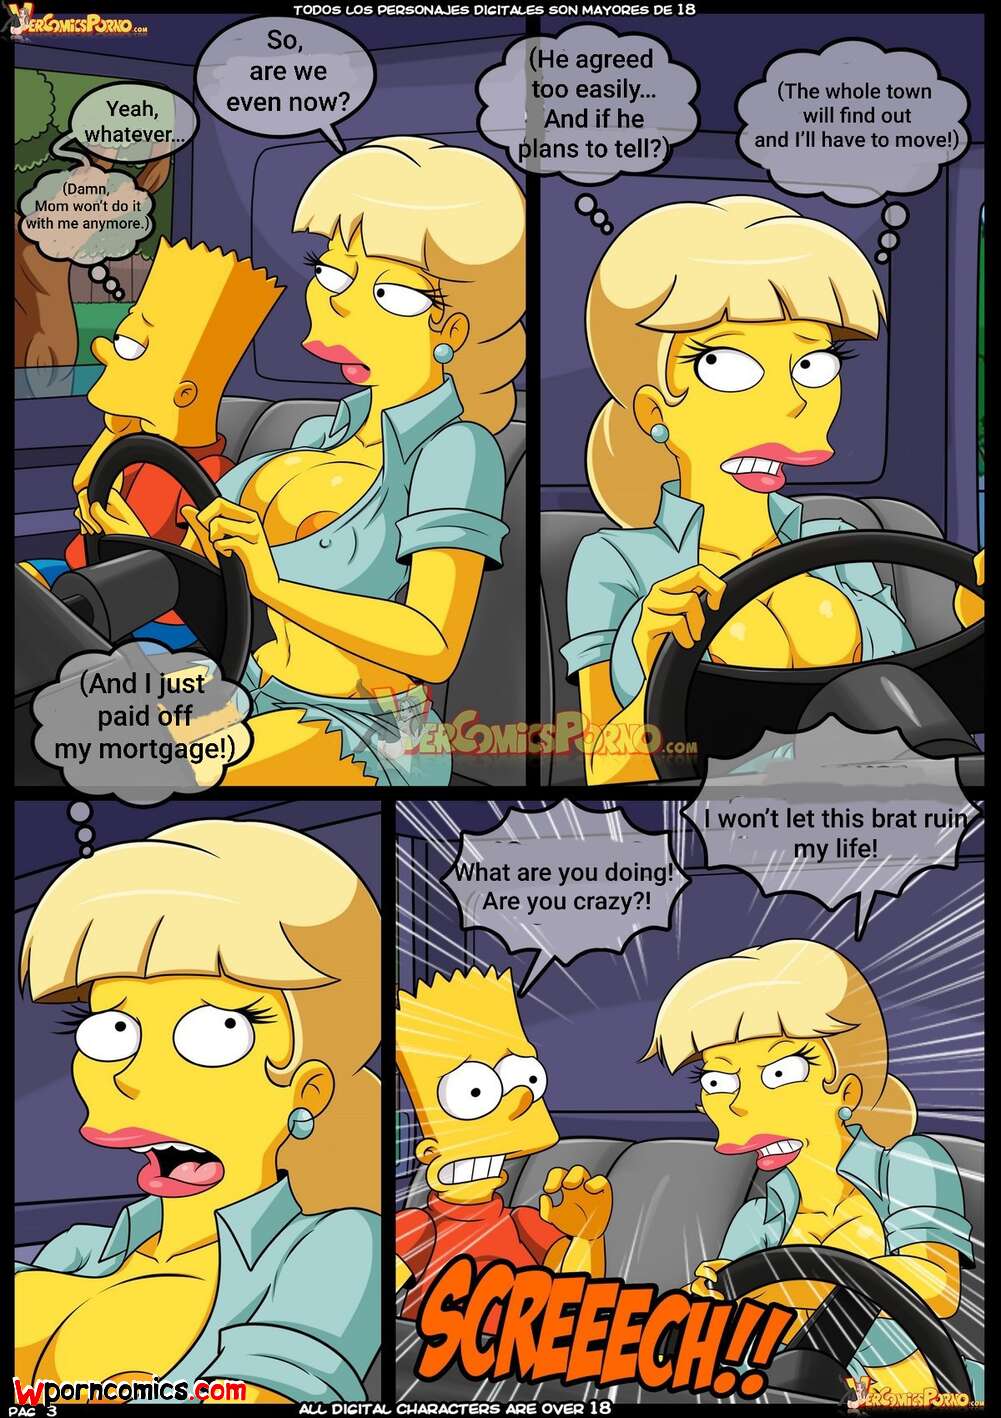 Simpsons comics porn